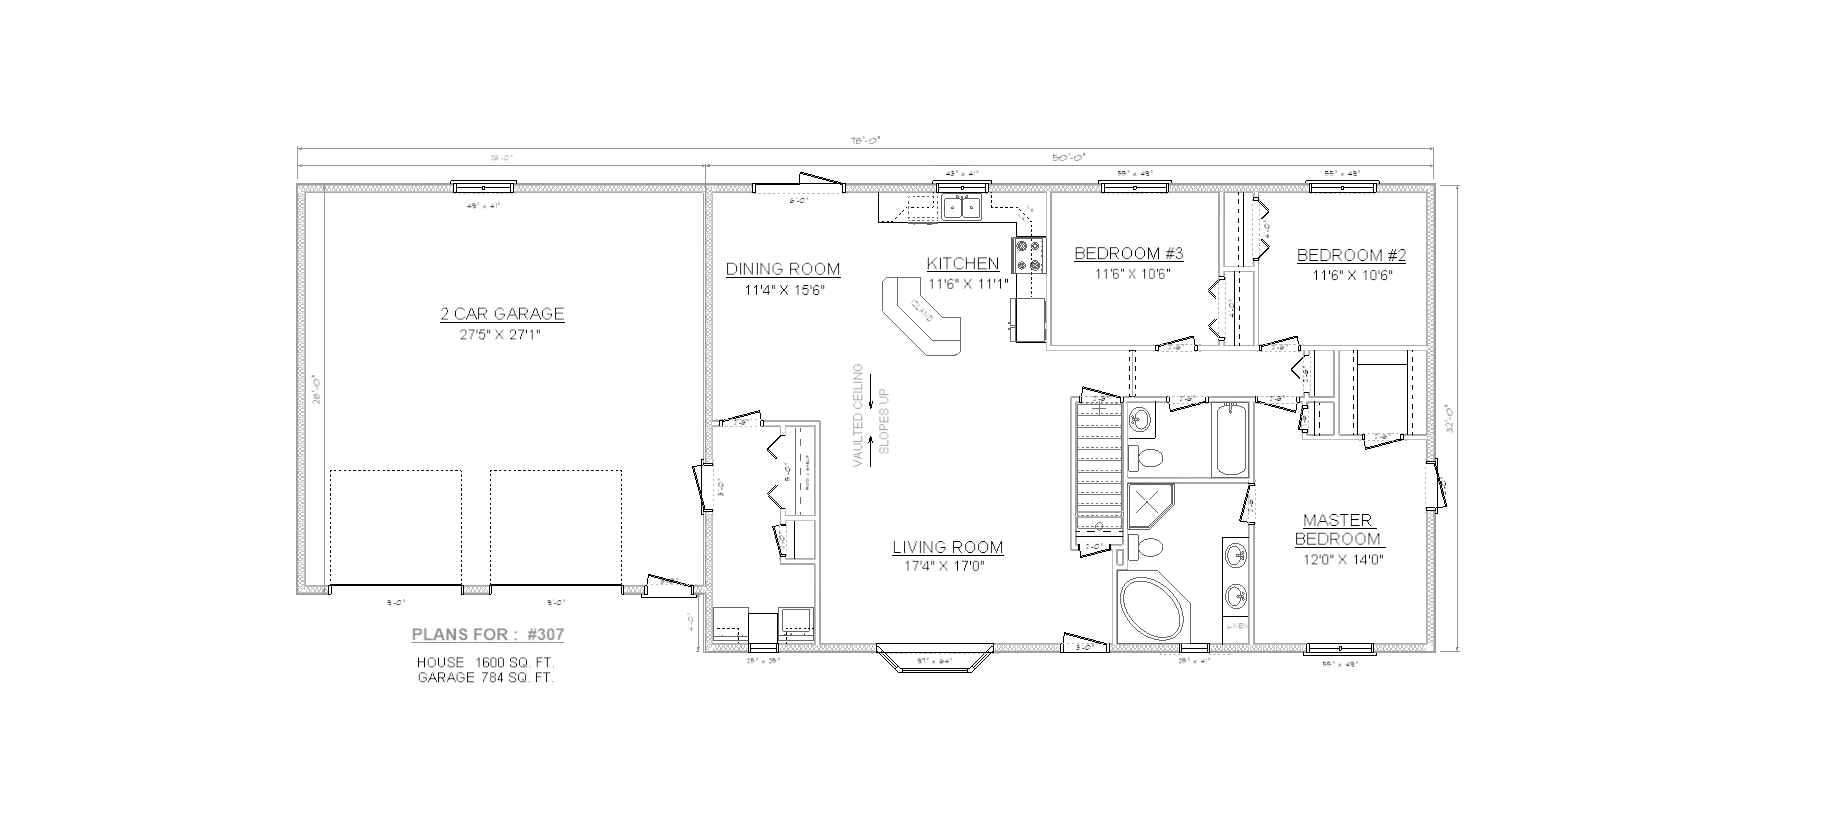 Penner Homes Floor Plan Id: 307